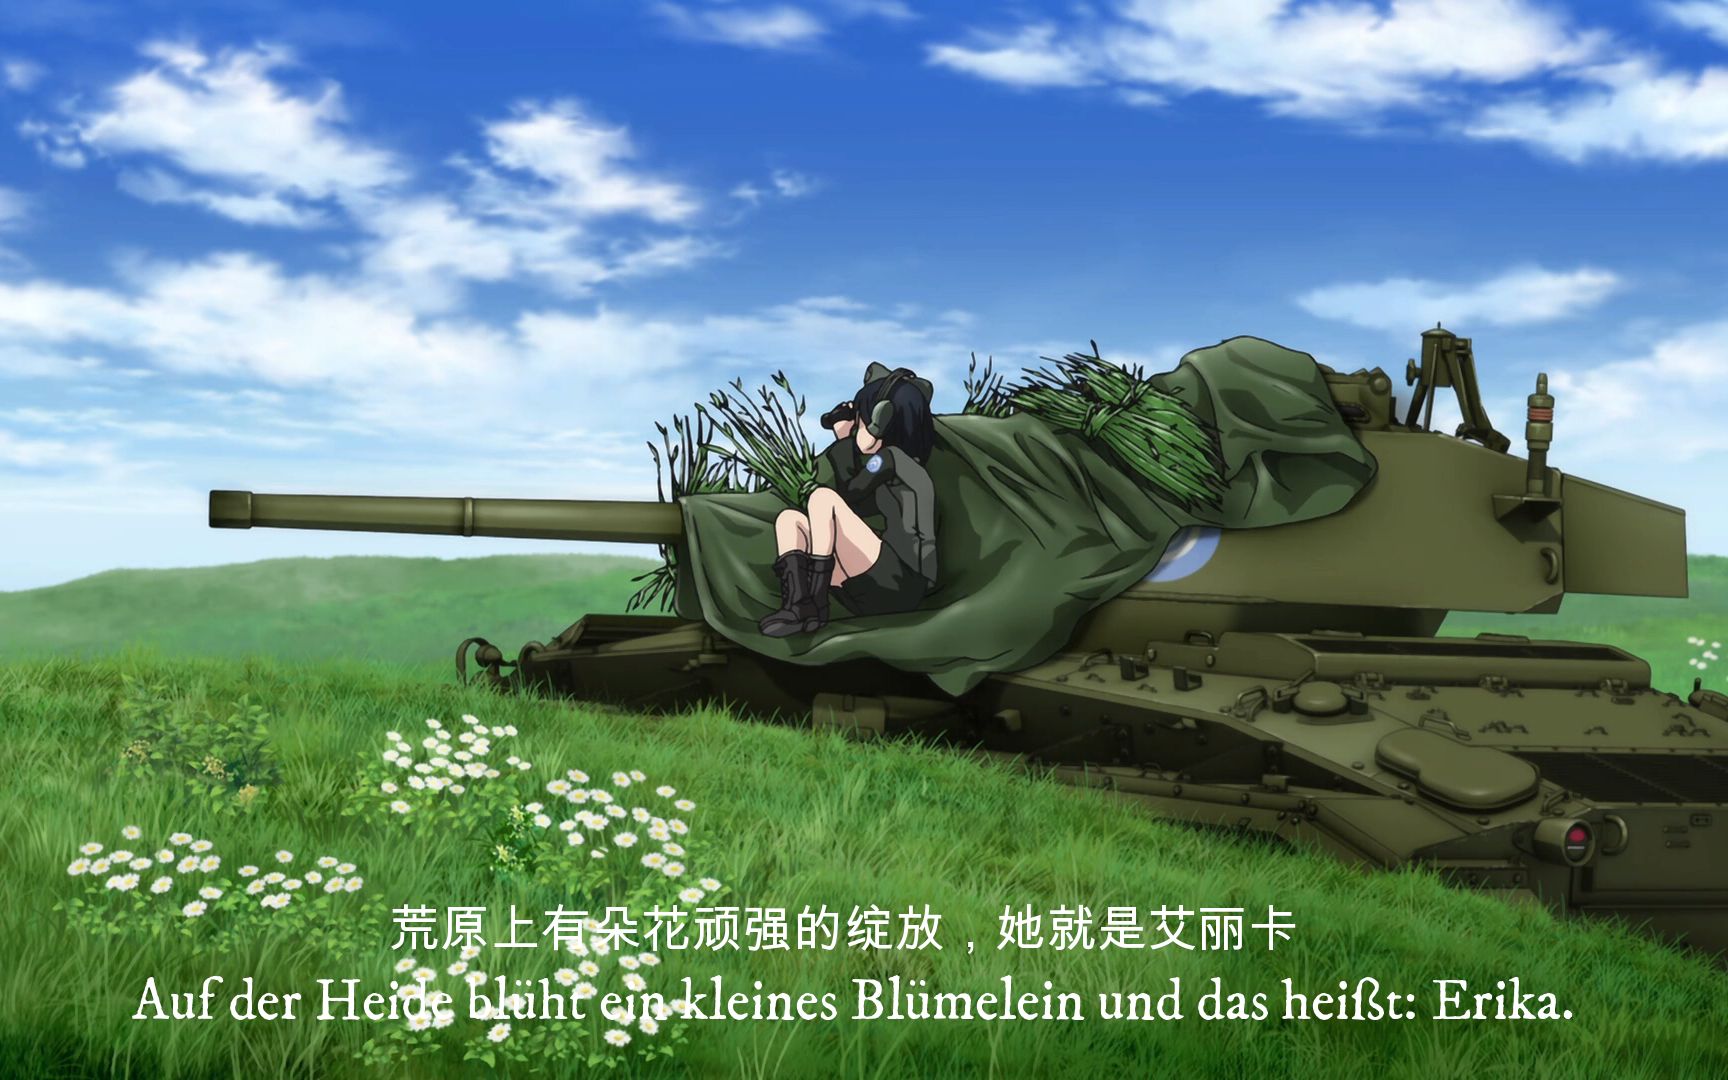 少女与战车艾丽卡壁纸图片